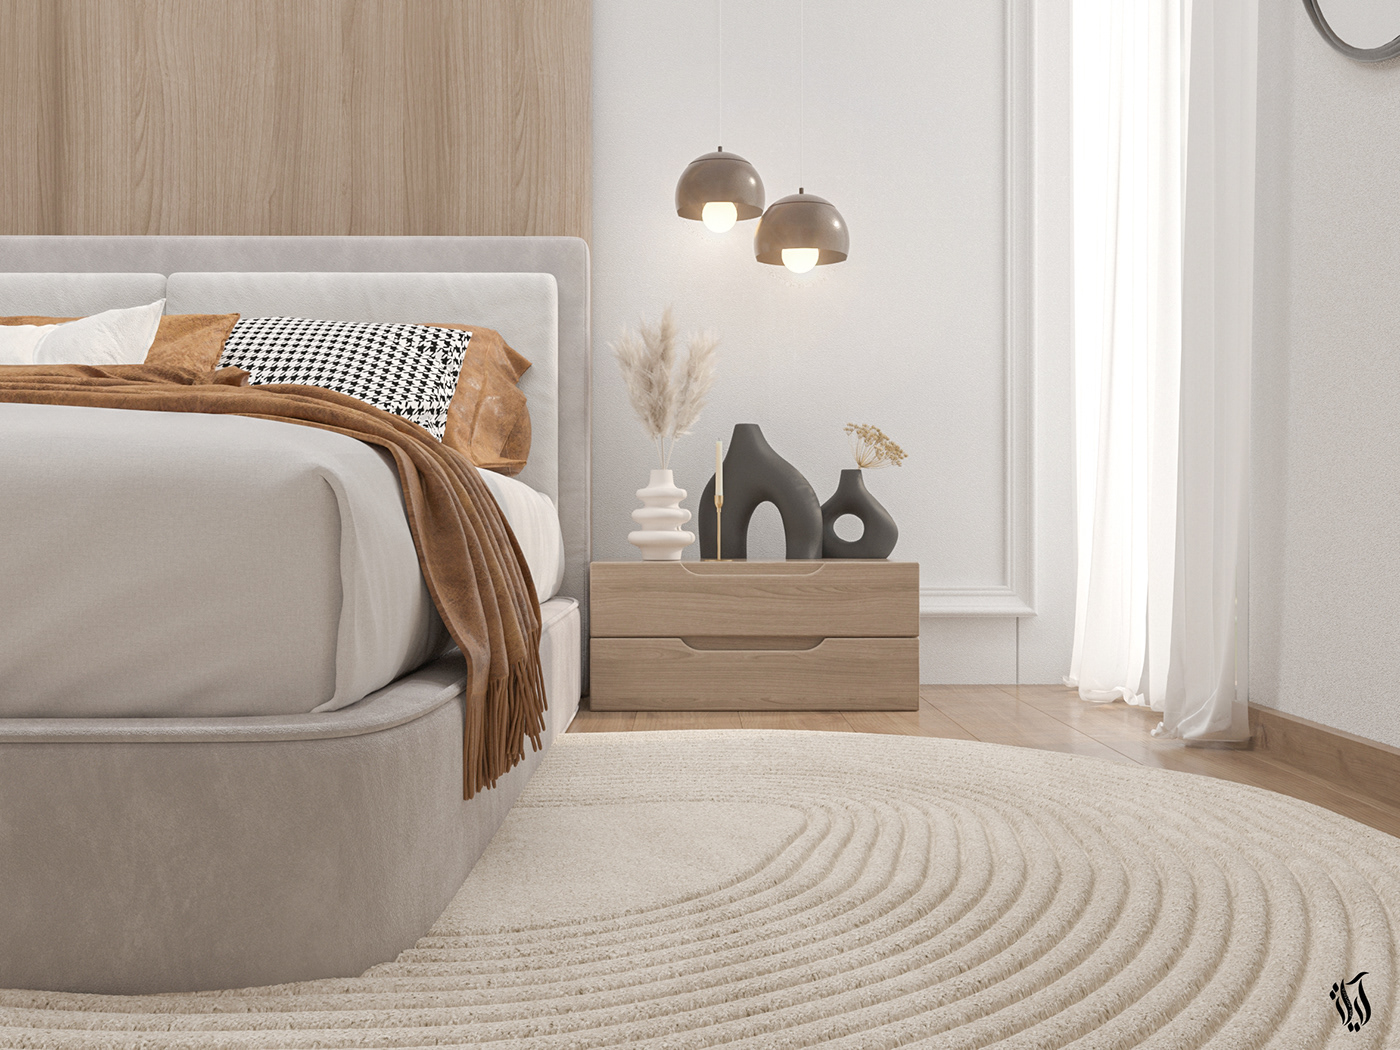 indoor interior design  visualization 3D bedroom design homedecor decor Interior 3ds max bedroominterior